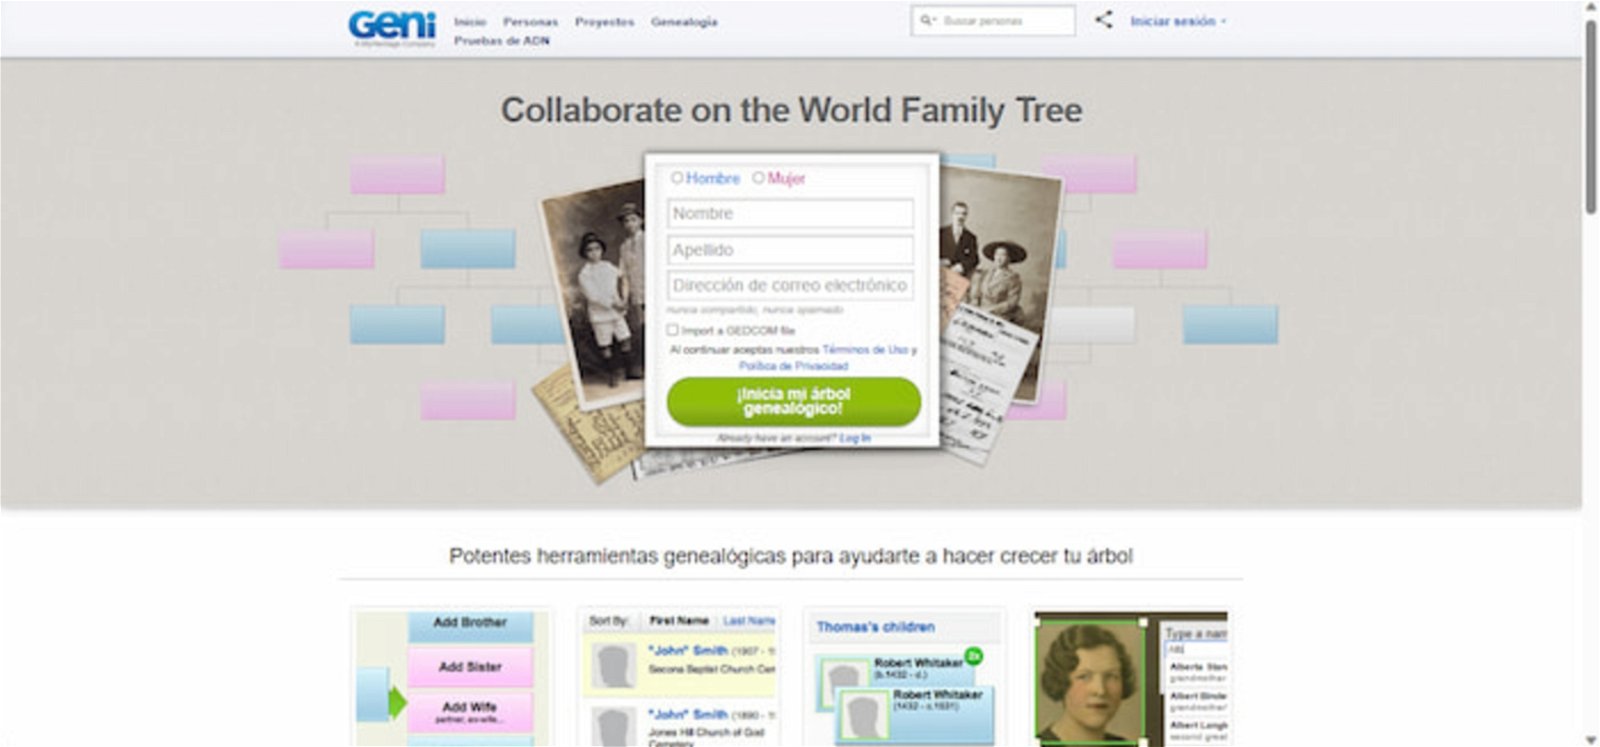 Geni es una web que permite crear árboles genealógicos colaborativos con otras personas y en tiempo real